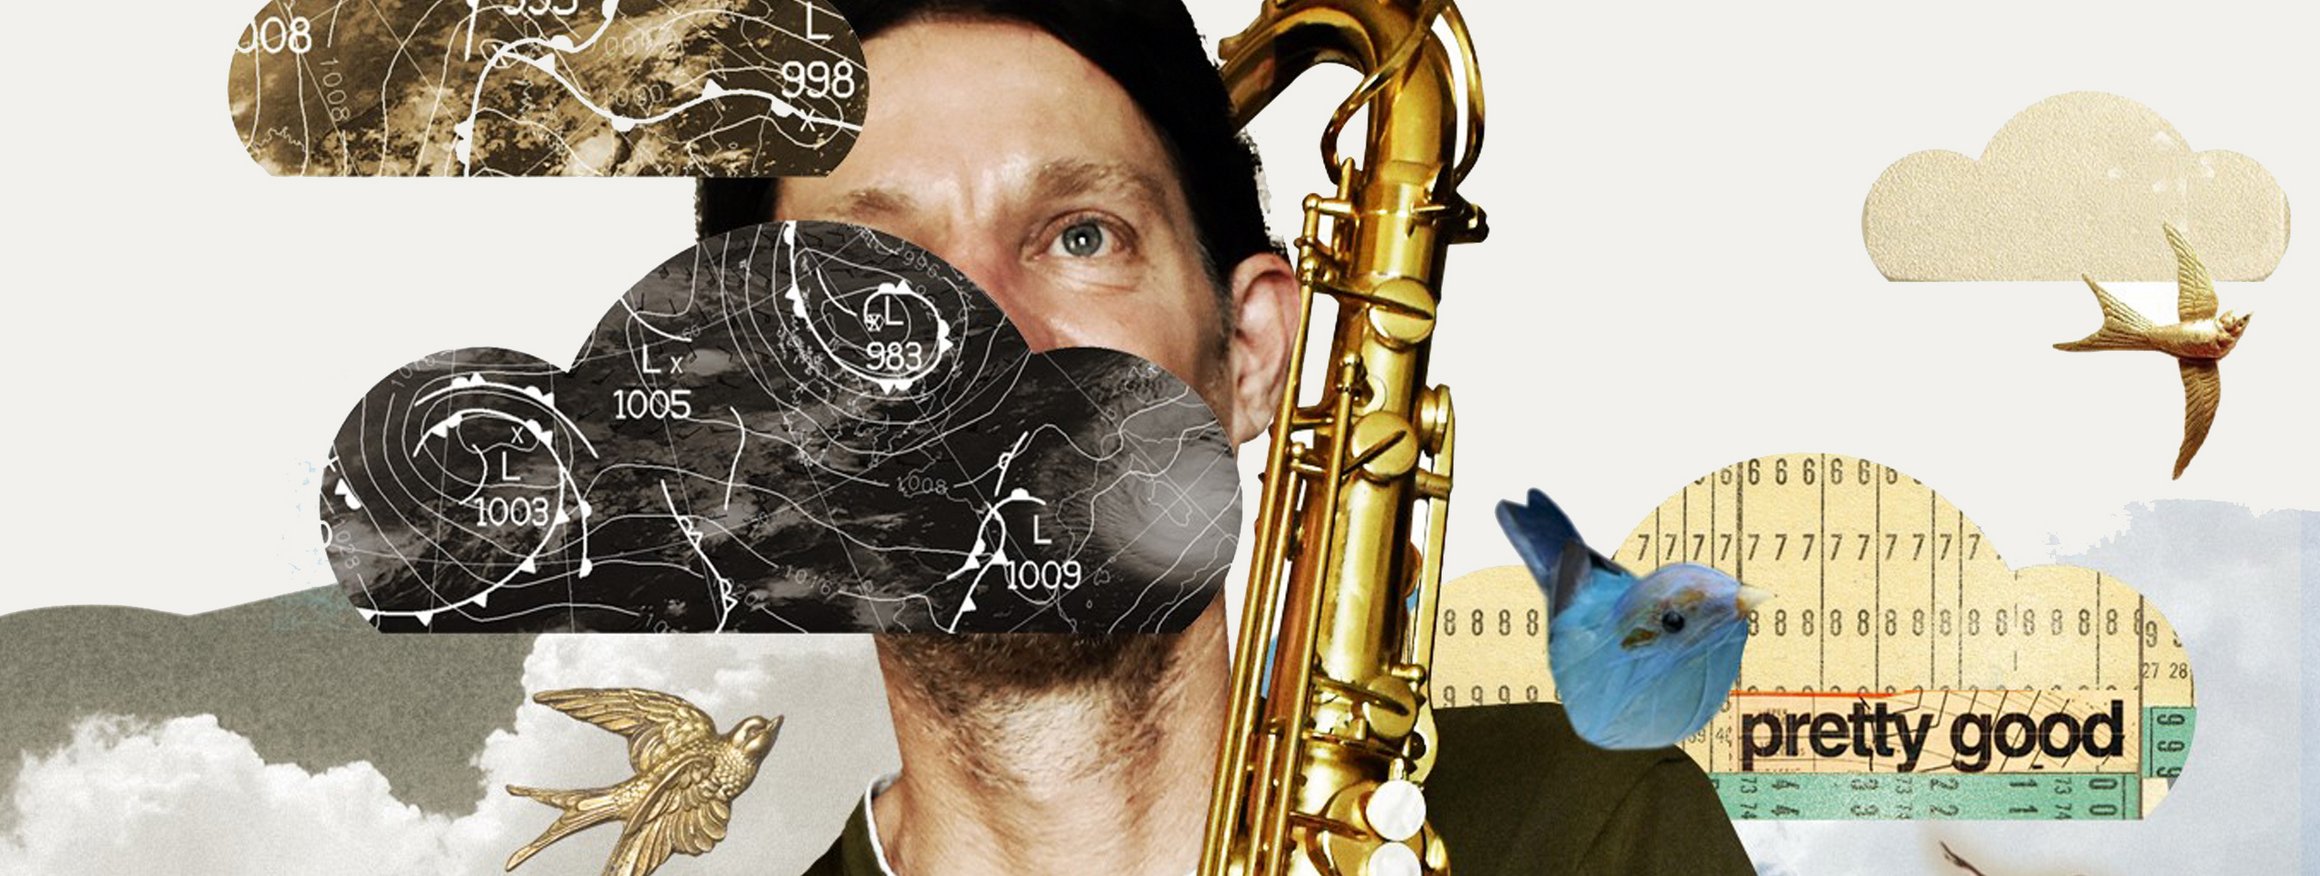 Die Collage zeigt einen Musiker mit einem Saxofon umringt von Symbolen, wie eine Schwalbe, Regenbogen, Wolken und Umsatzstatistiken